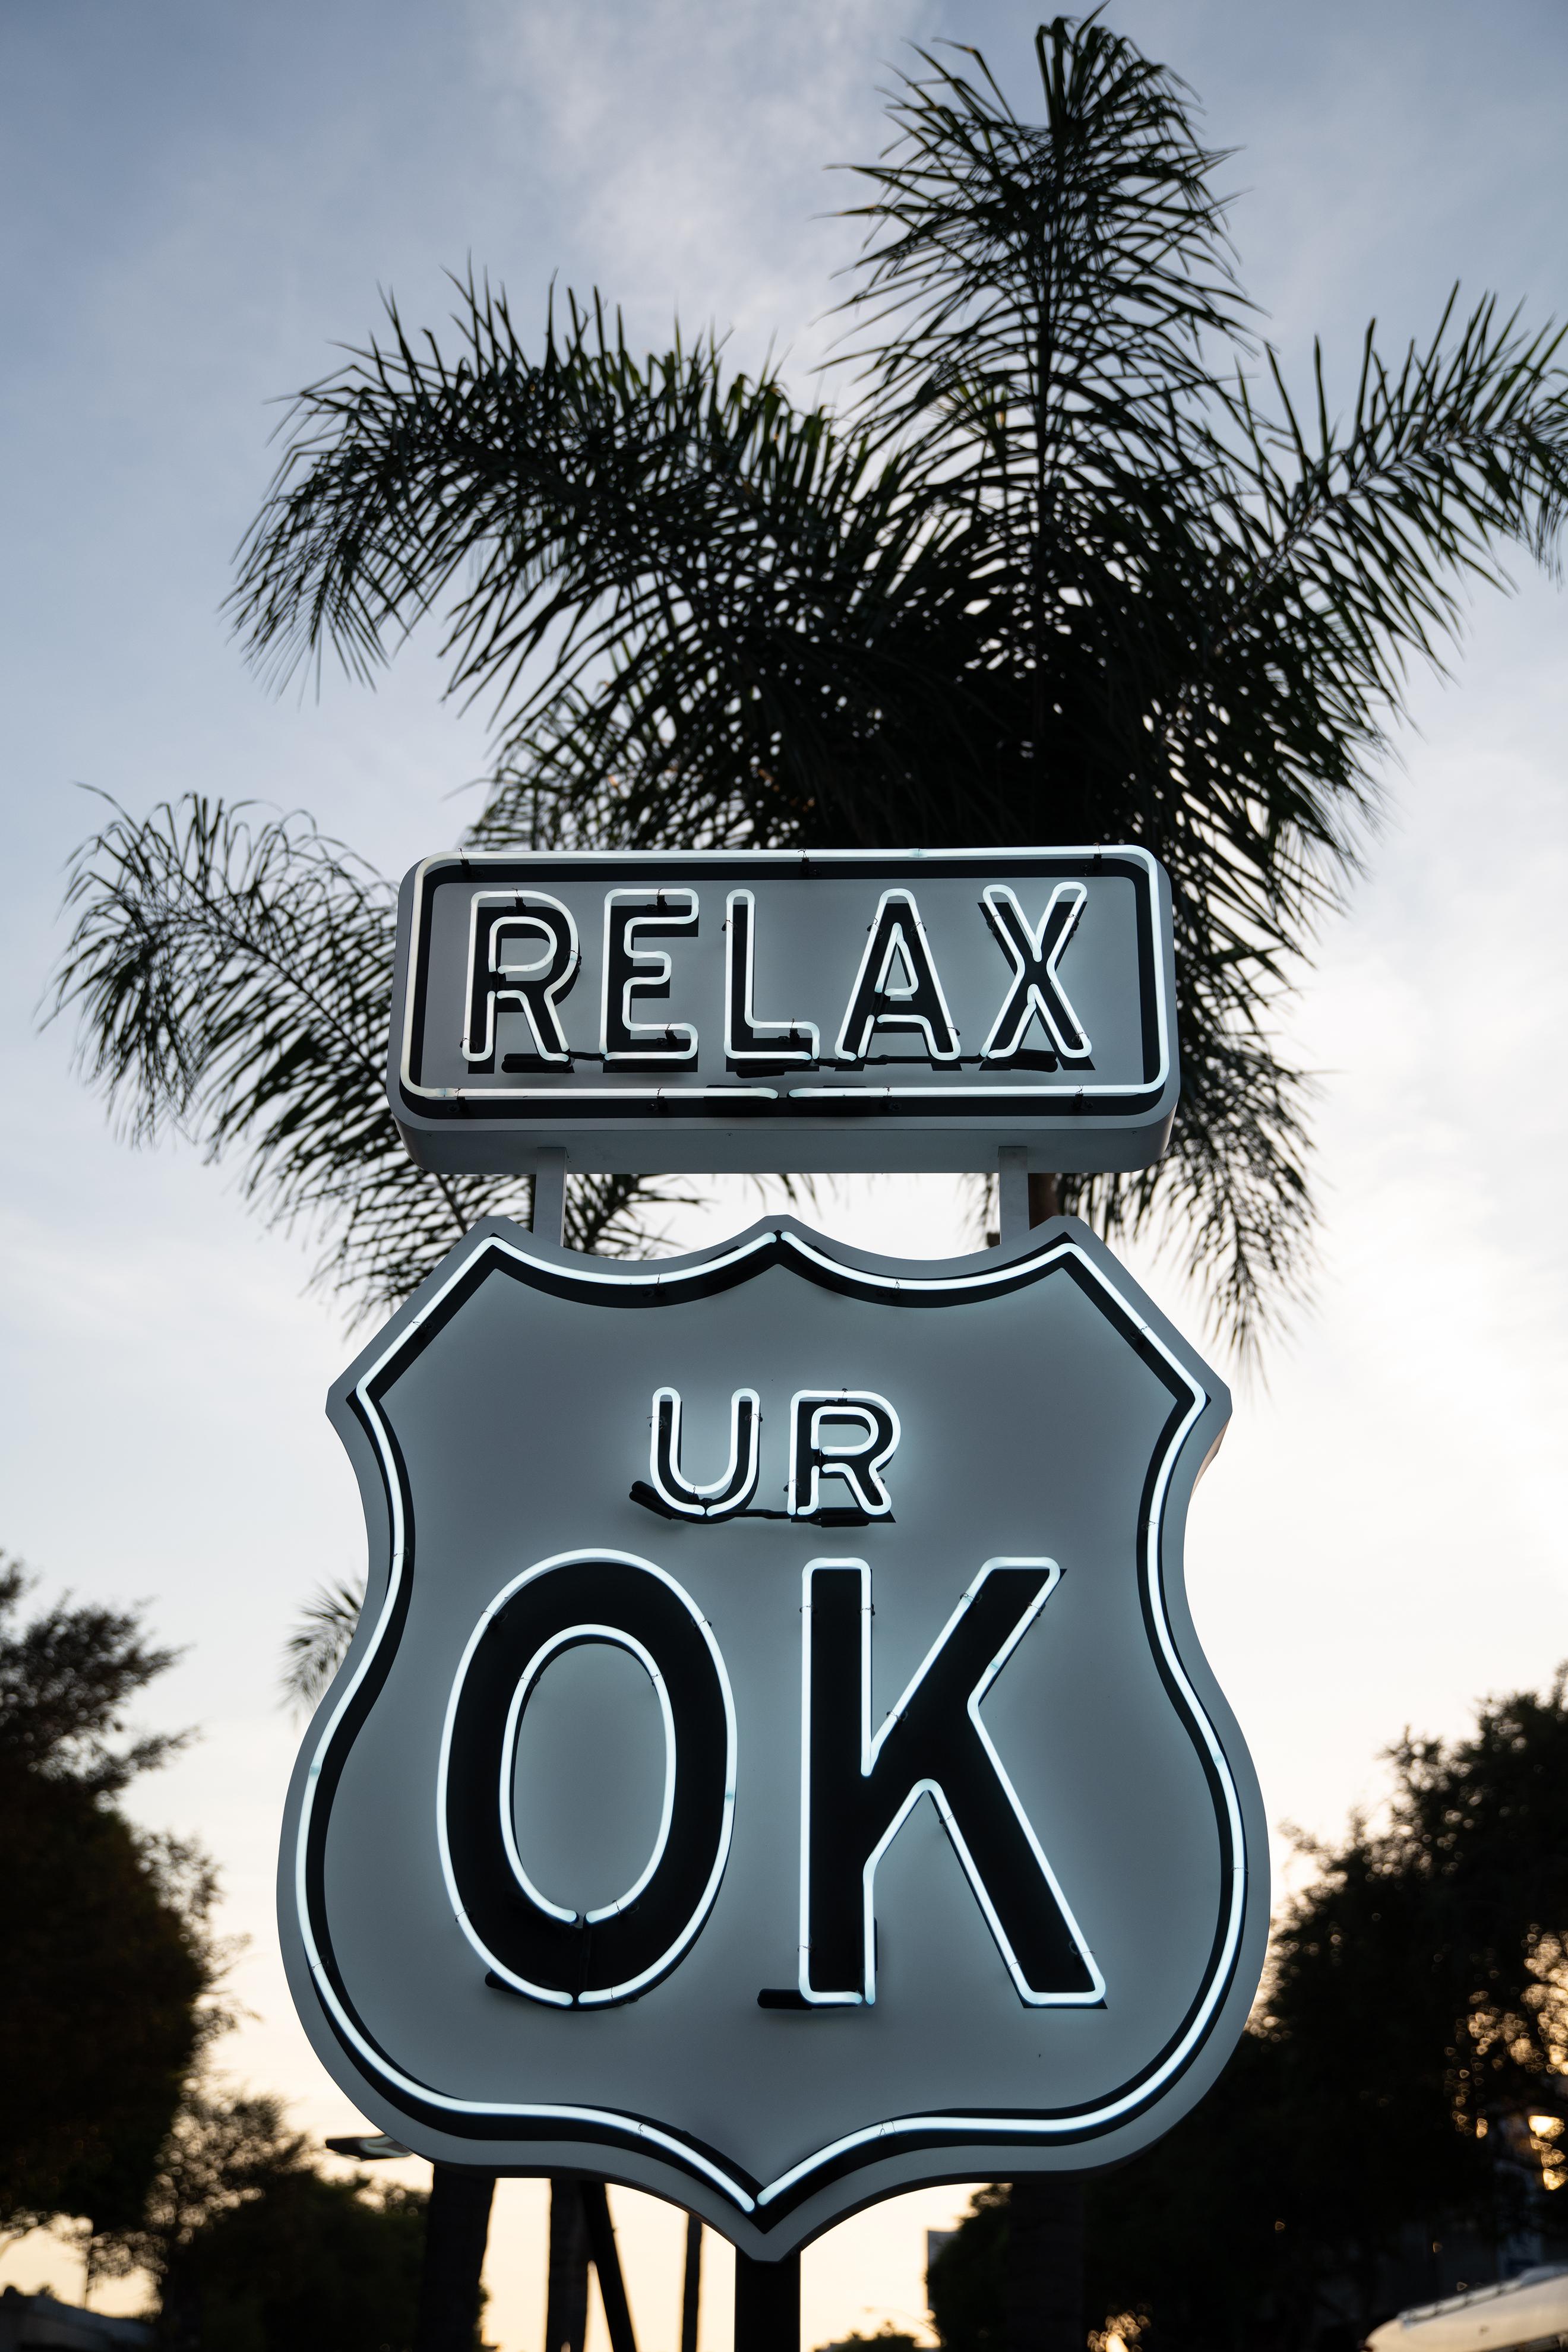 "Relax UR OK" - Neon Small -Contemporary Street Sign Sculpture - Mixed Media Art by Scott Froschauer